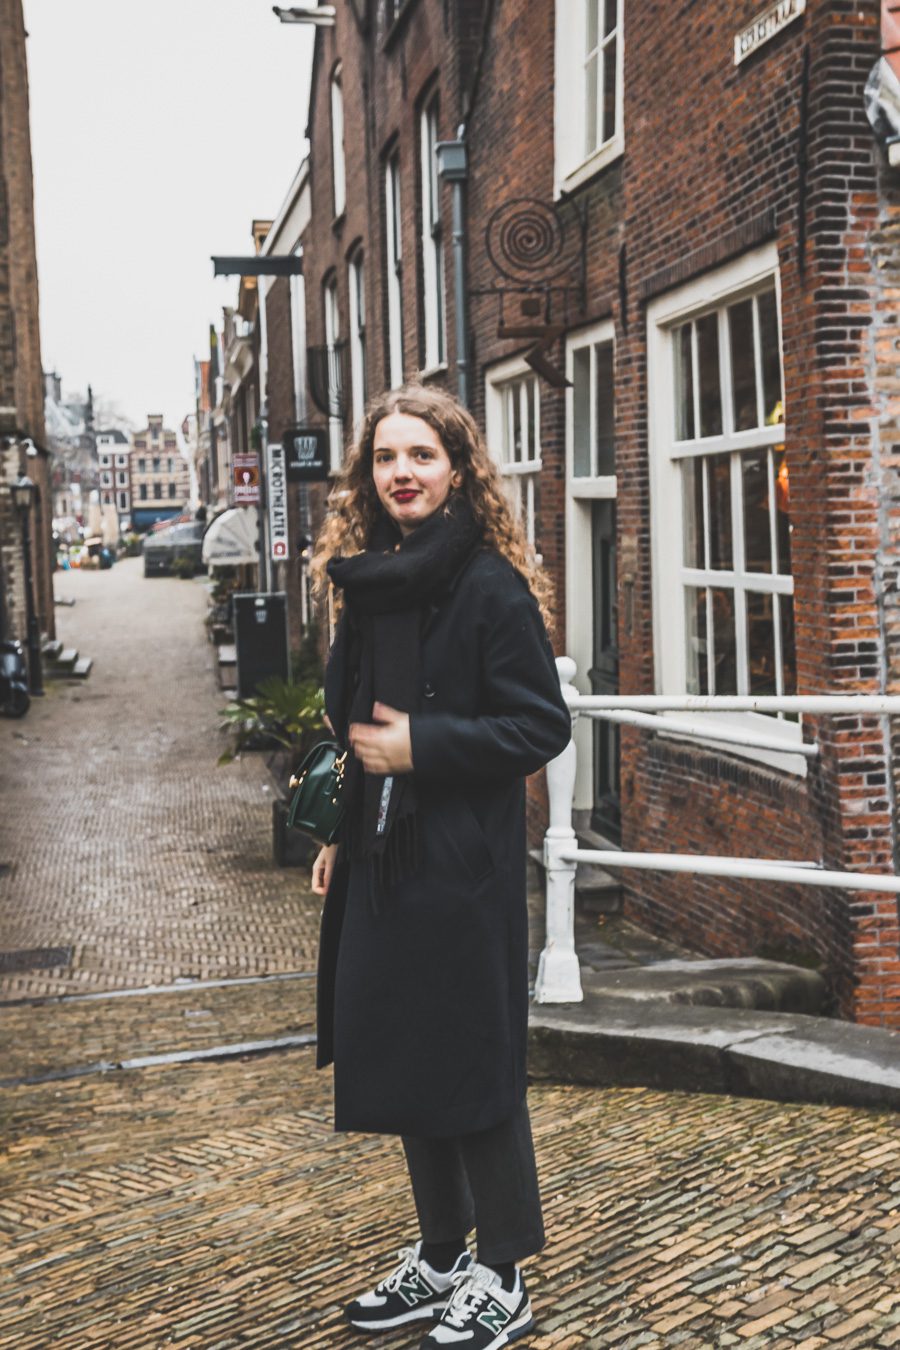 Delft, aux Pays-Bas, est une ville charmante qui regorge d'histoire et de culture. Avec ses nombreux canaux, son architecture du XVIe siècle et ses restaurants impressionnants, Delft ne manquera pas de faire bonne impression. Explorez l'agitation de la place Markt, promenez-vous le long des canaux pittoresques et perdez-vous dans les rues pavées, ou appréciez les œuvres d'art exposées à la Royal Delftware Factory - peu importe ce que vous choisissez, Delft promet une expérience magique.